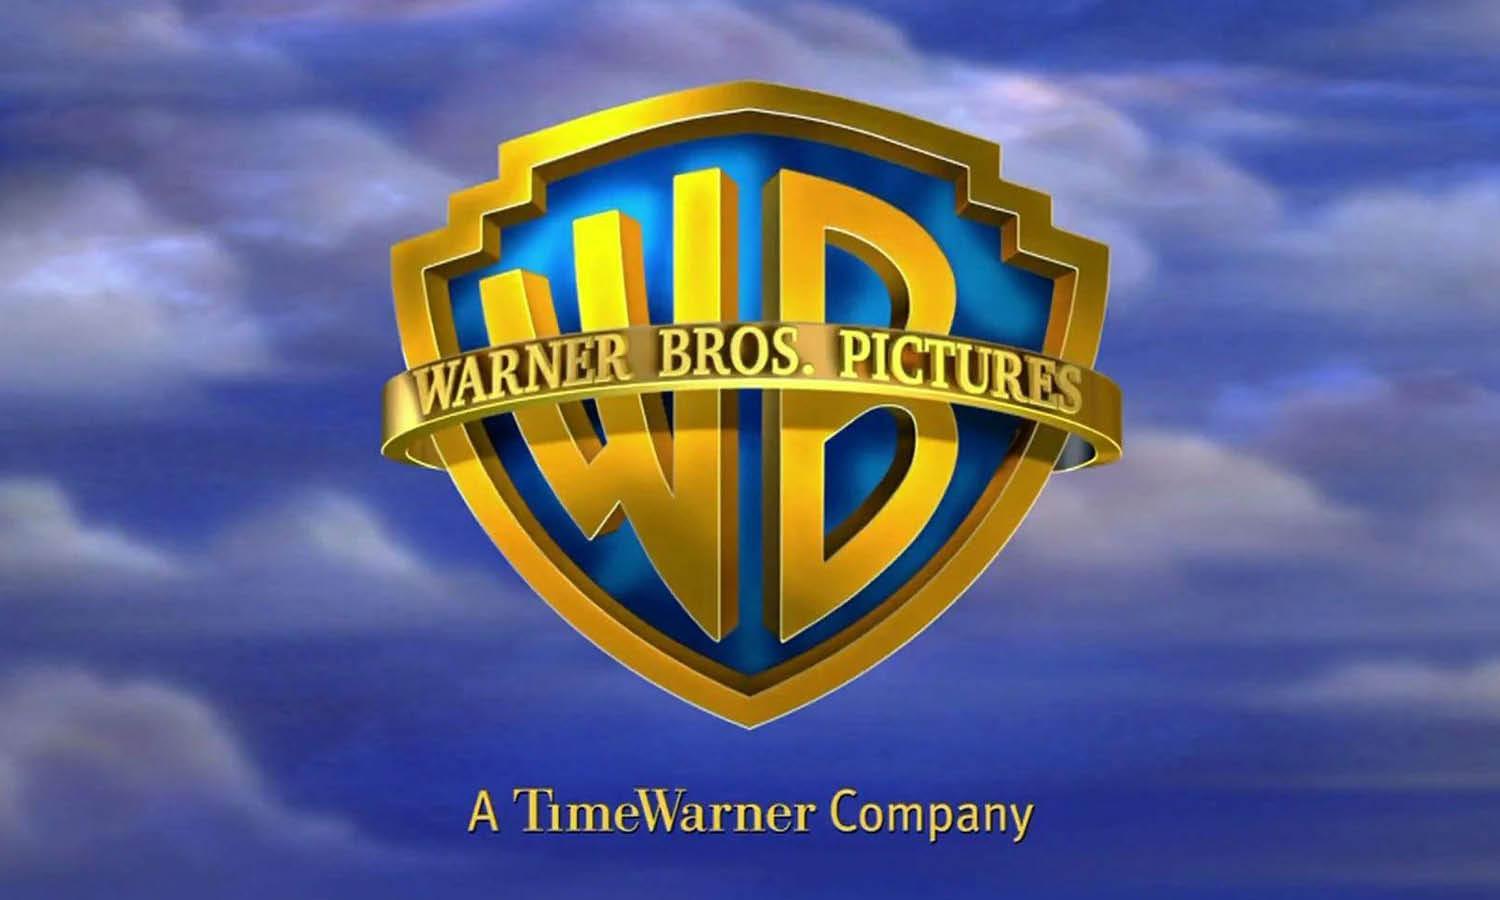 Warner Brothers Logo Design: History & Evolution - Kreafolk